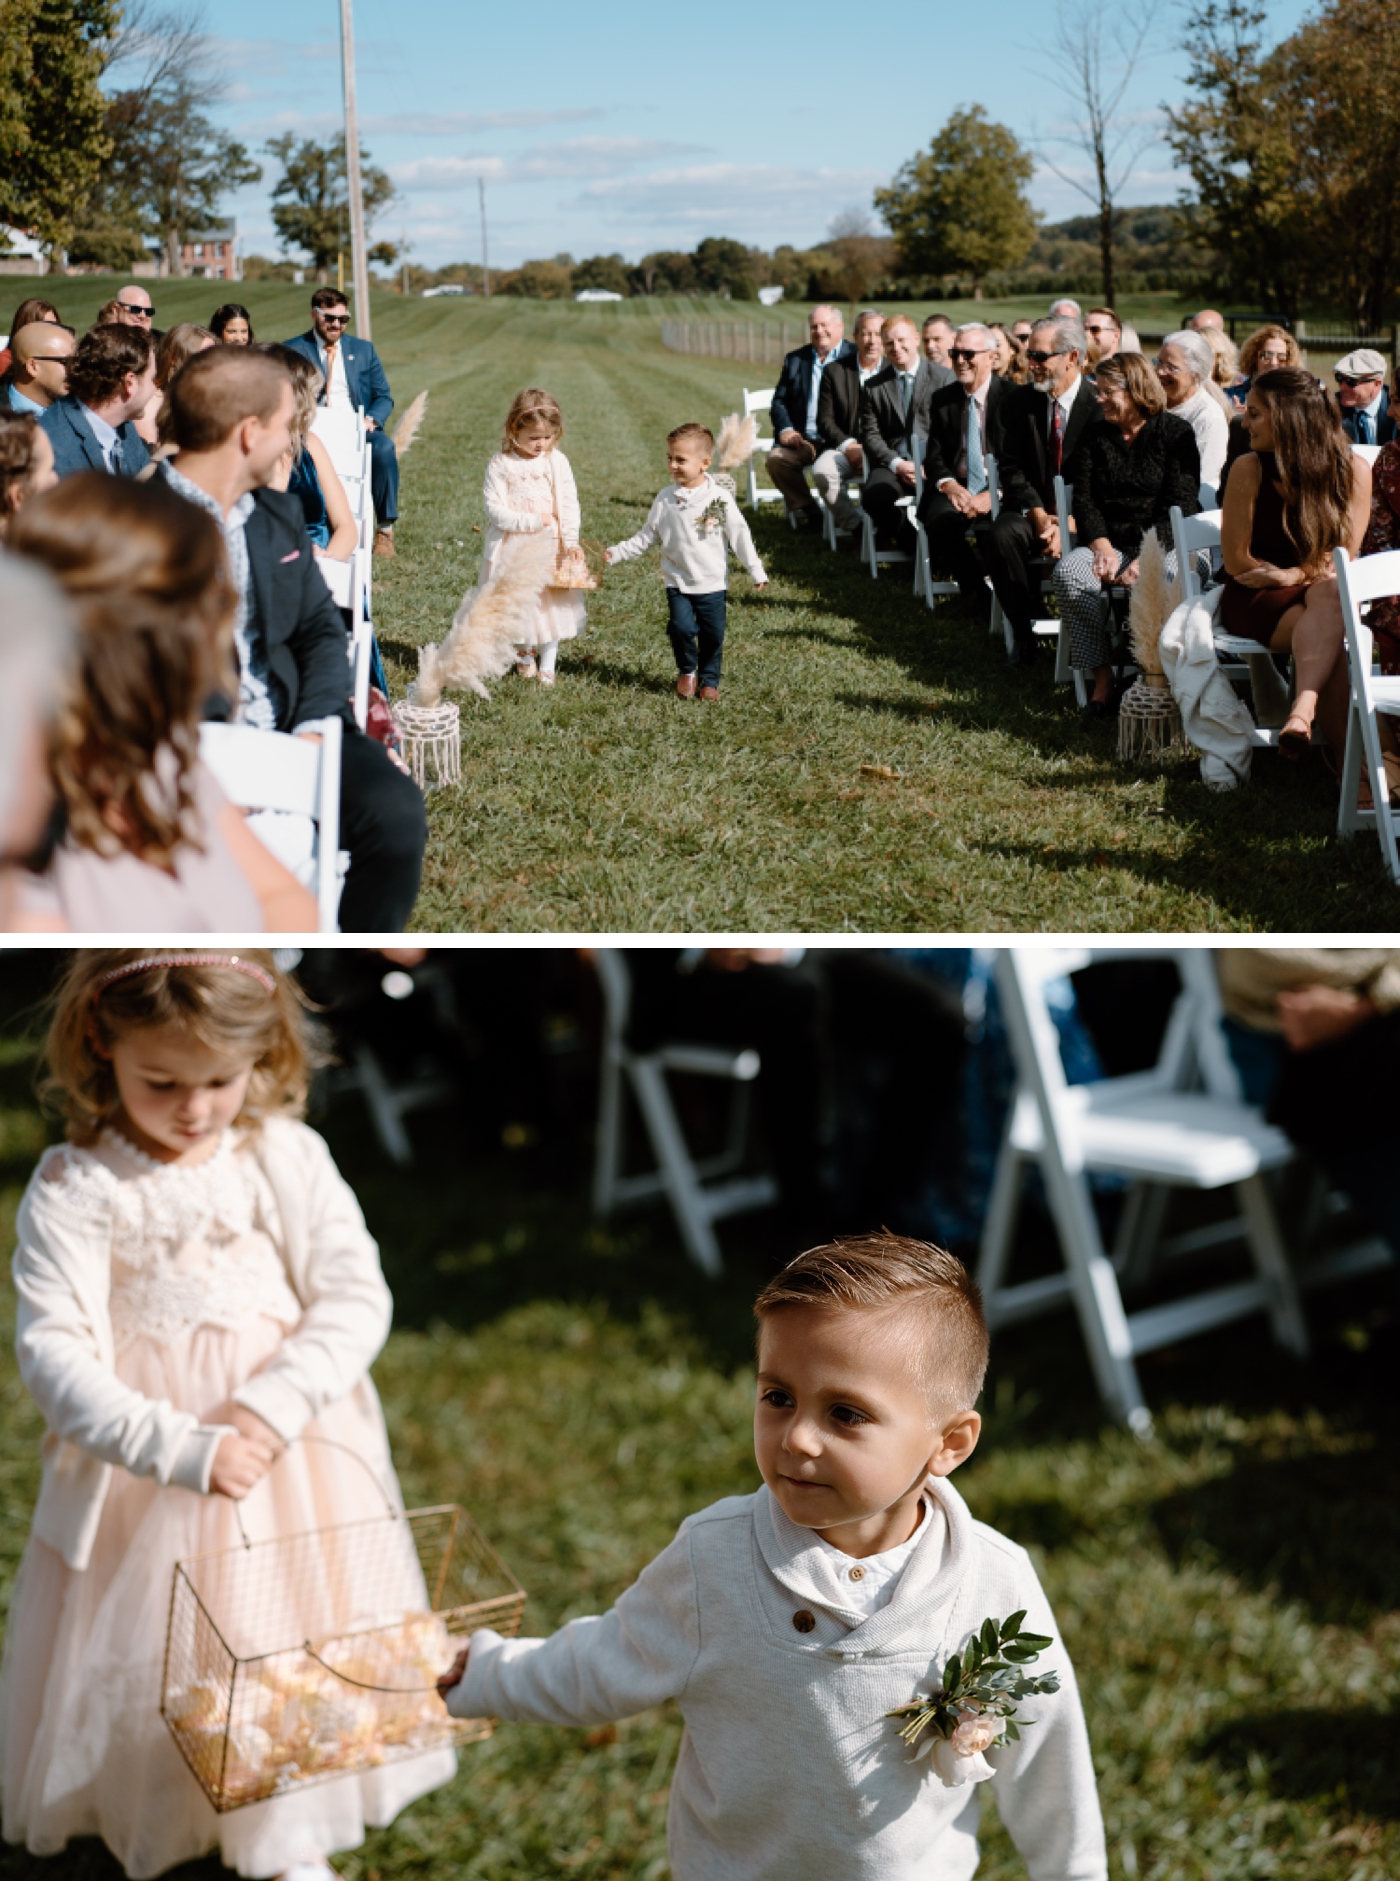 Outdoor wedding ceremony at Elizabeth Farms in Lancaster, PA